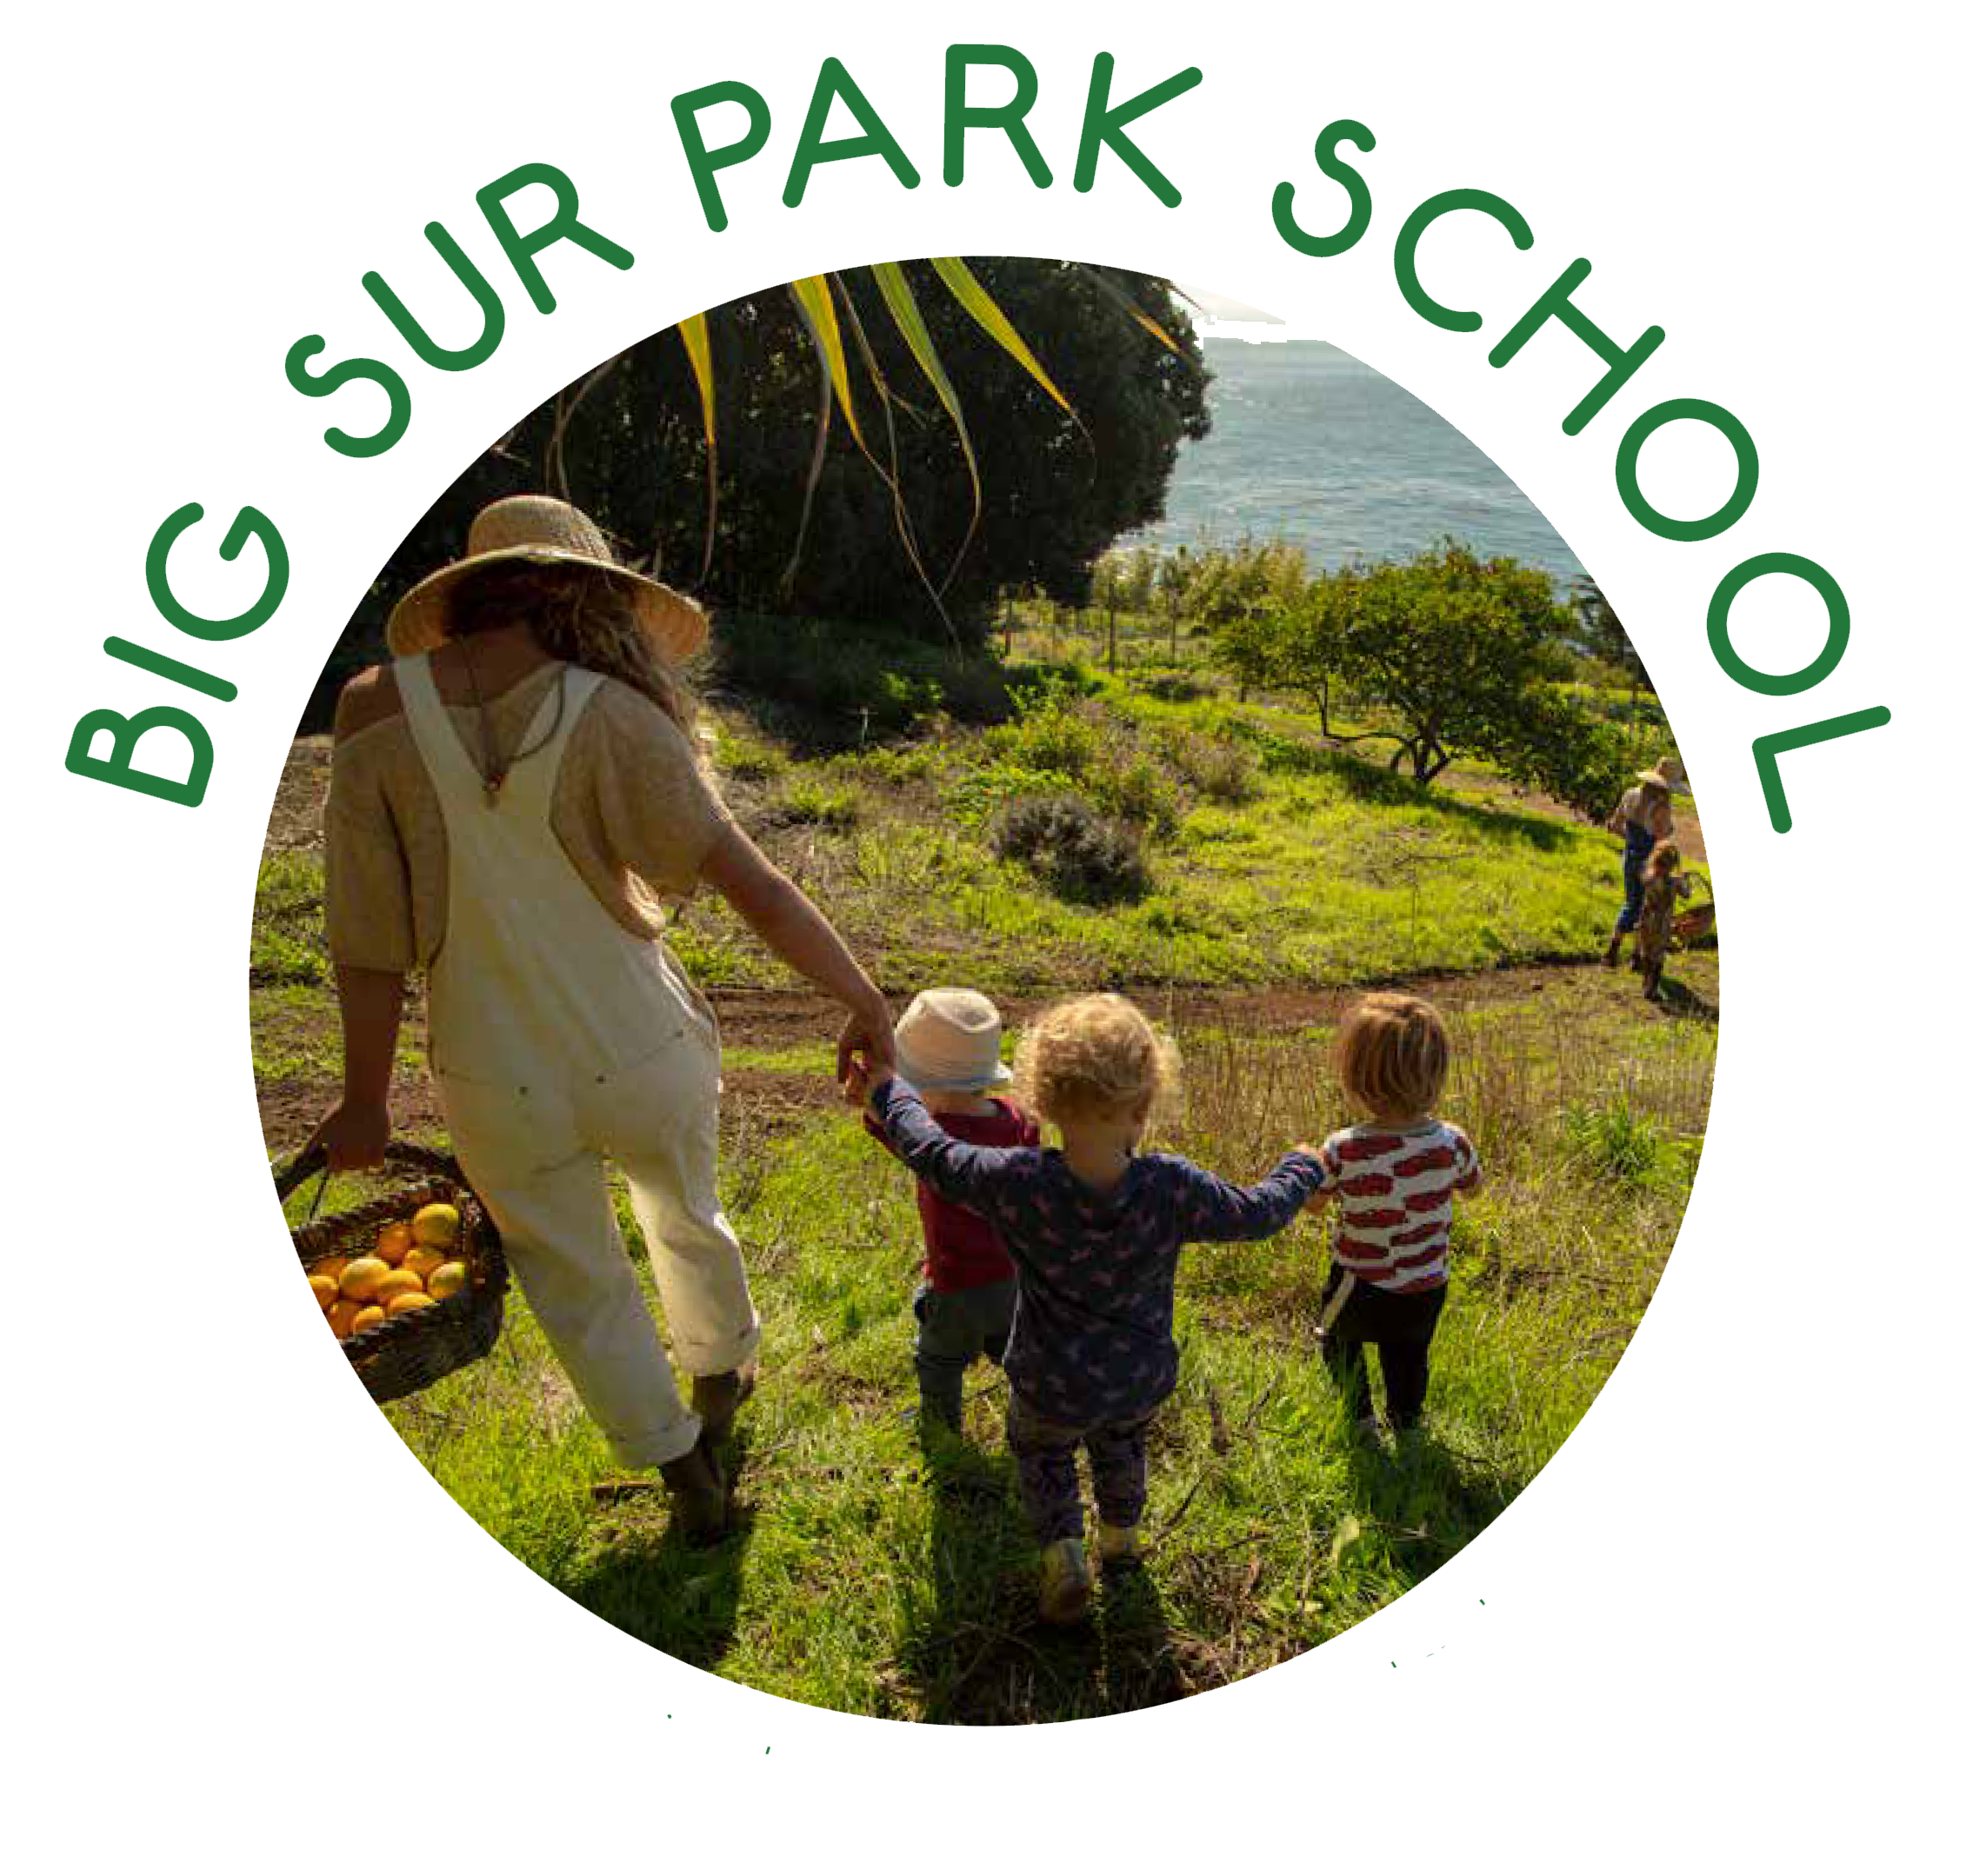 Big Sur Park School 